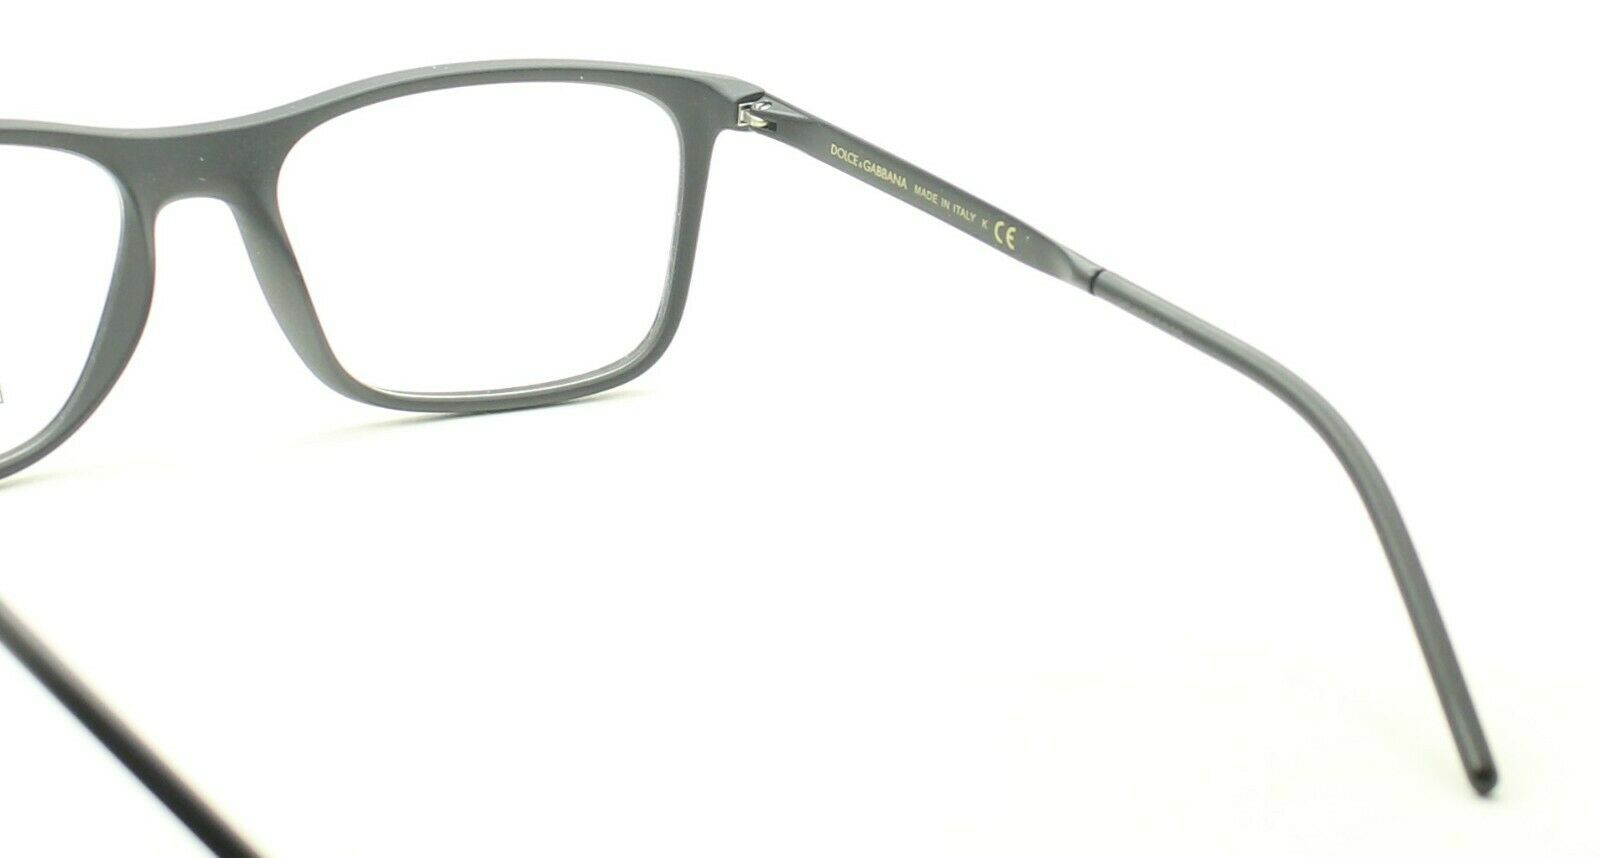 Dolce & Gabbana D&G DG5044 2525 55mm Eyeglasses RX Optical Glasses Frames - New